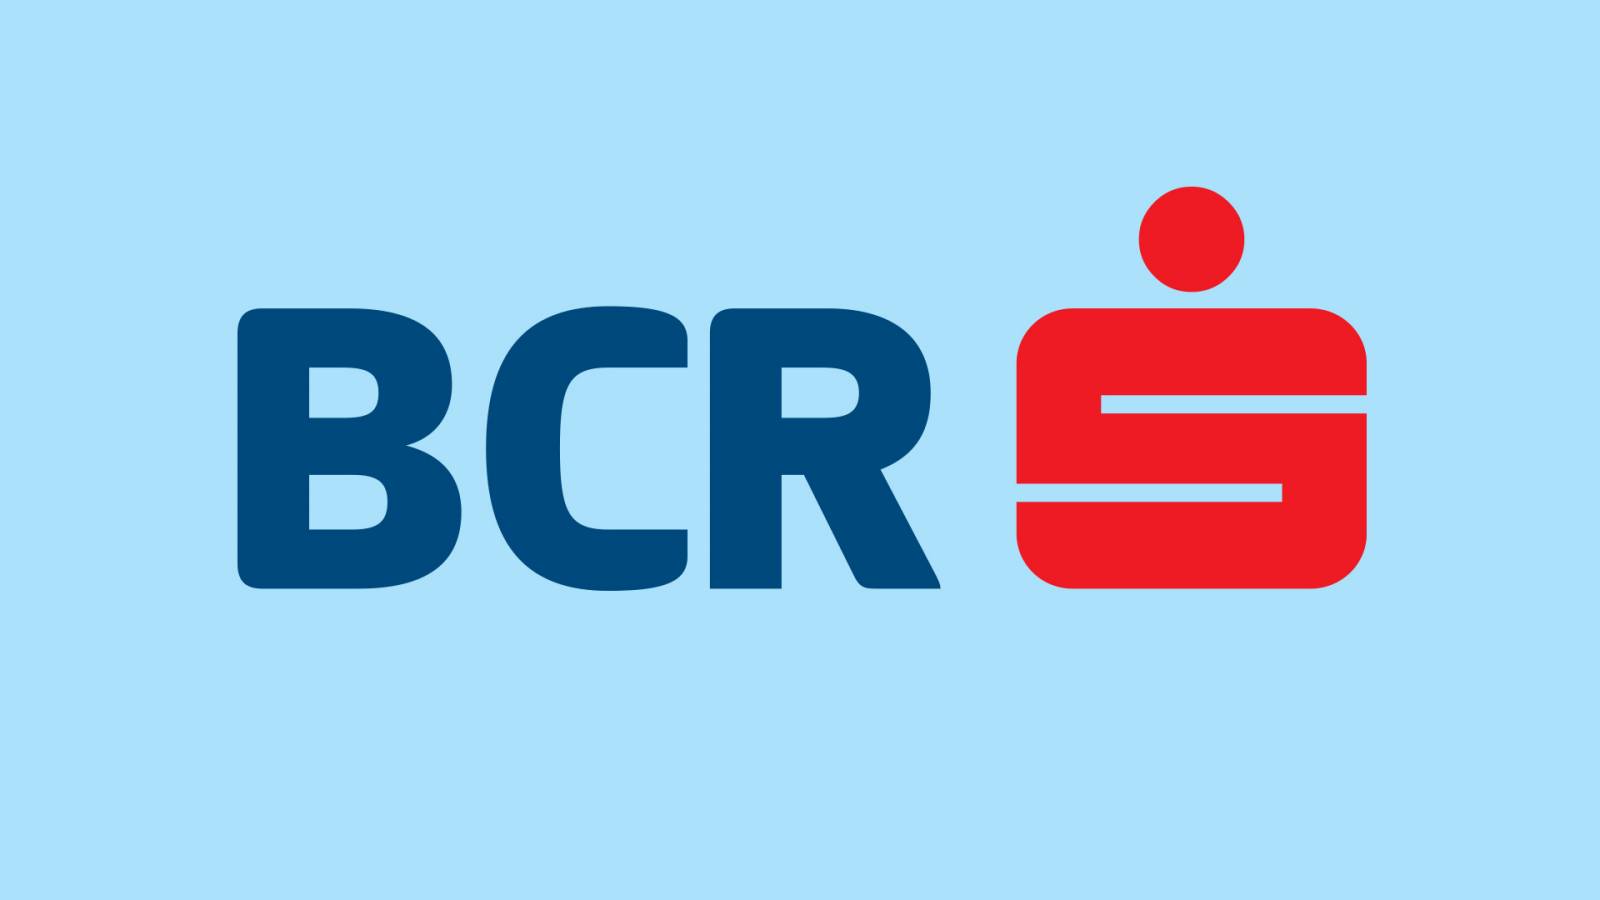 BCR Rumänien avstånd